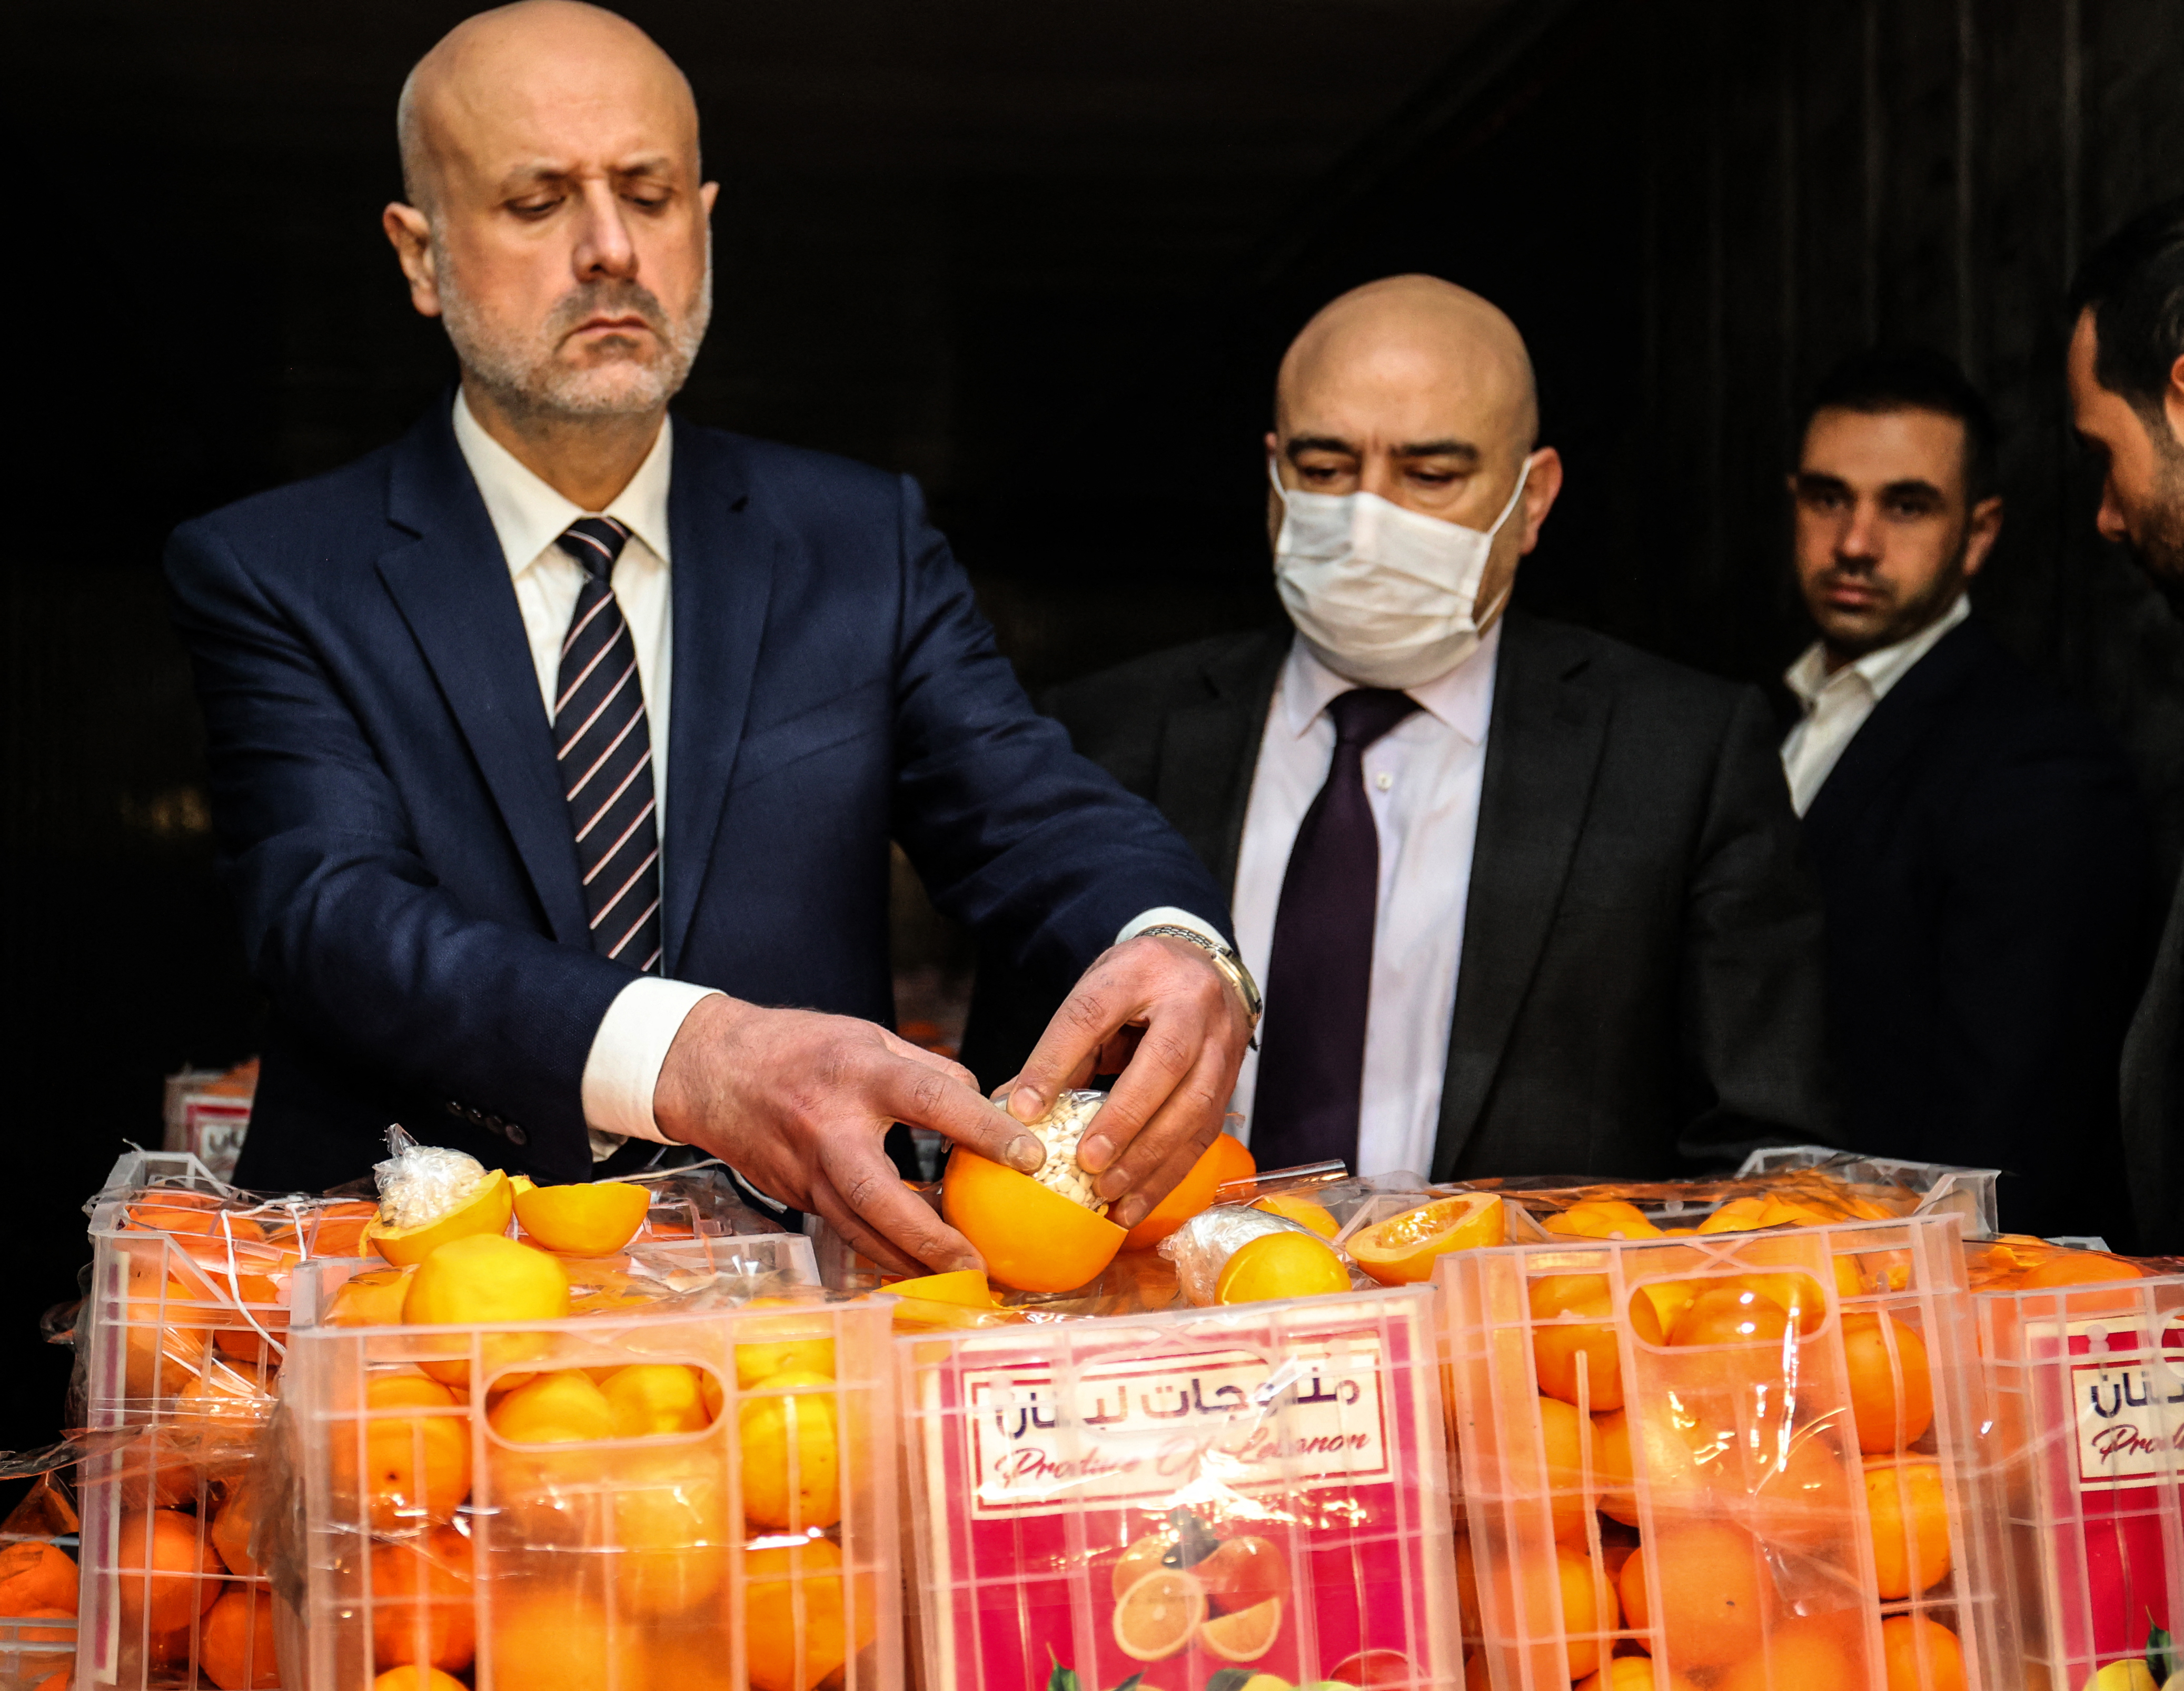 O ministro do Interior do Líbano, Bassan al-Mawlawi, verifica uma das laranjas falsas cheias de comprimidos de Captagon (uma droga ilegal) em caixas contendo frutas reais, depois que o carregamento foi interceptado no porto de Beirute